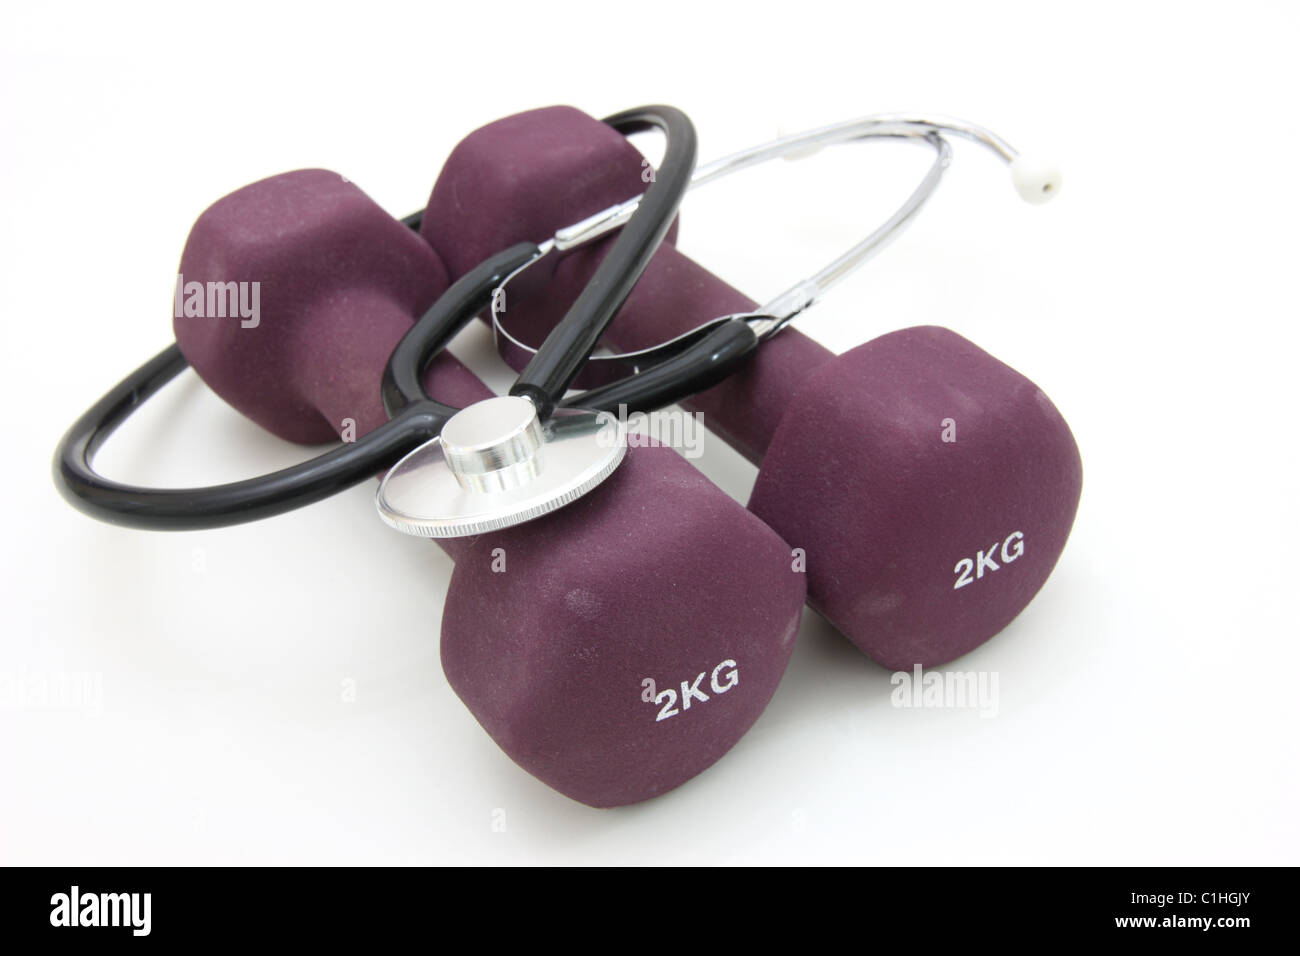 Stethoskop und Hantel Training Gewichte zusammen, um einen gesunden Lebensstil zu konzipieren. Stockfoto